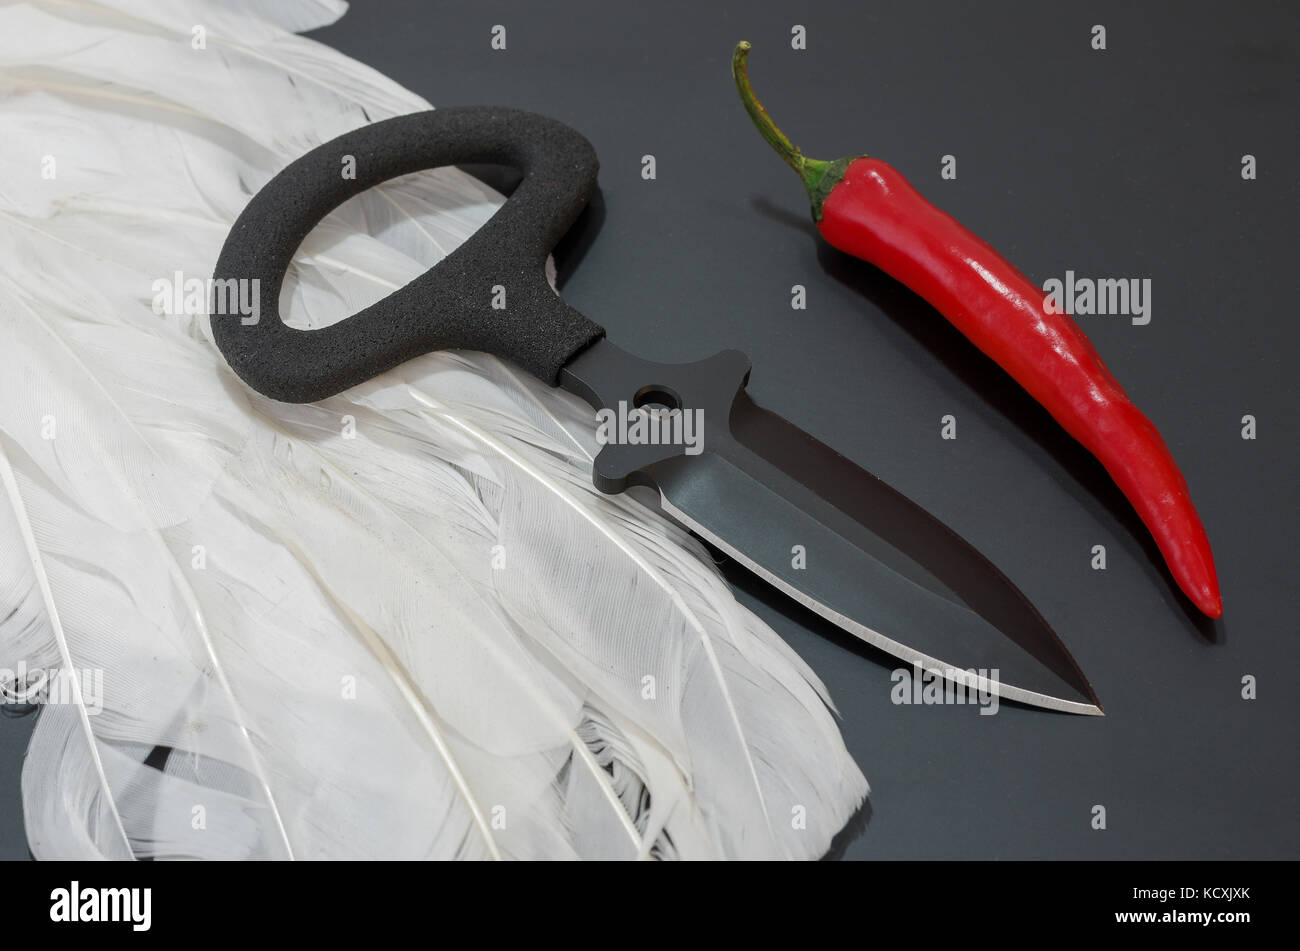 Schwarze Messer auf einem schwarzen Hintergrund. Weiße Federn und rotem Pfeffer. Taktisches Konzept. Stockfoto